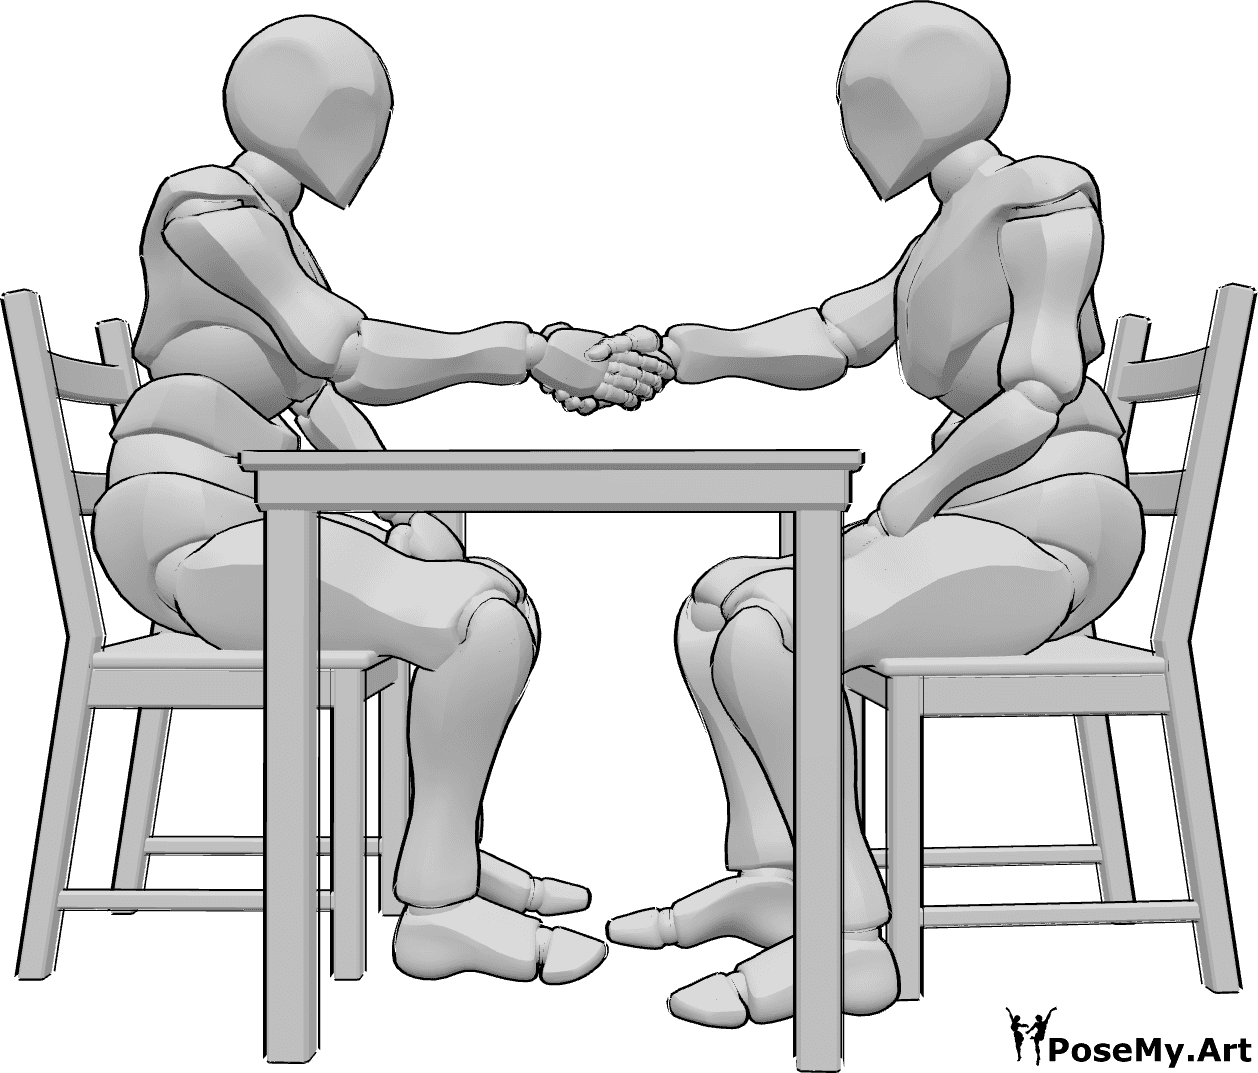 Referencia de poses- Postura masculina de apretón de manos sentado - Dos hombres están sentados en una mesa uno frente al otro y se dan la mano